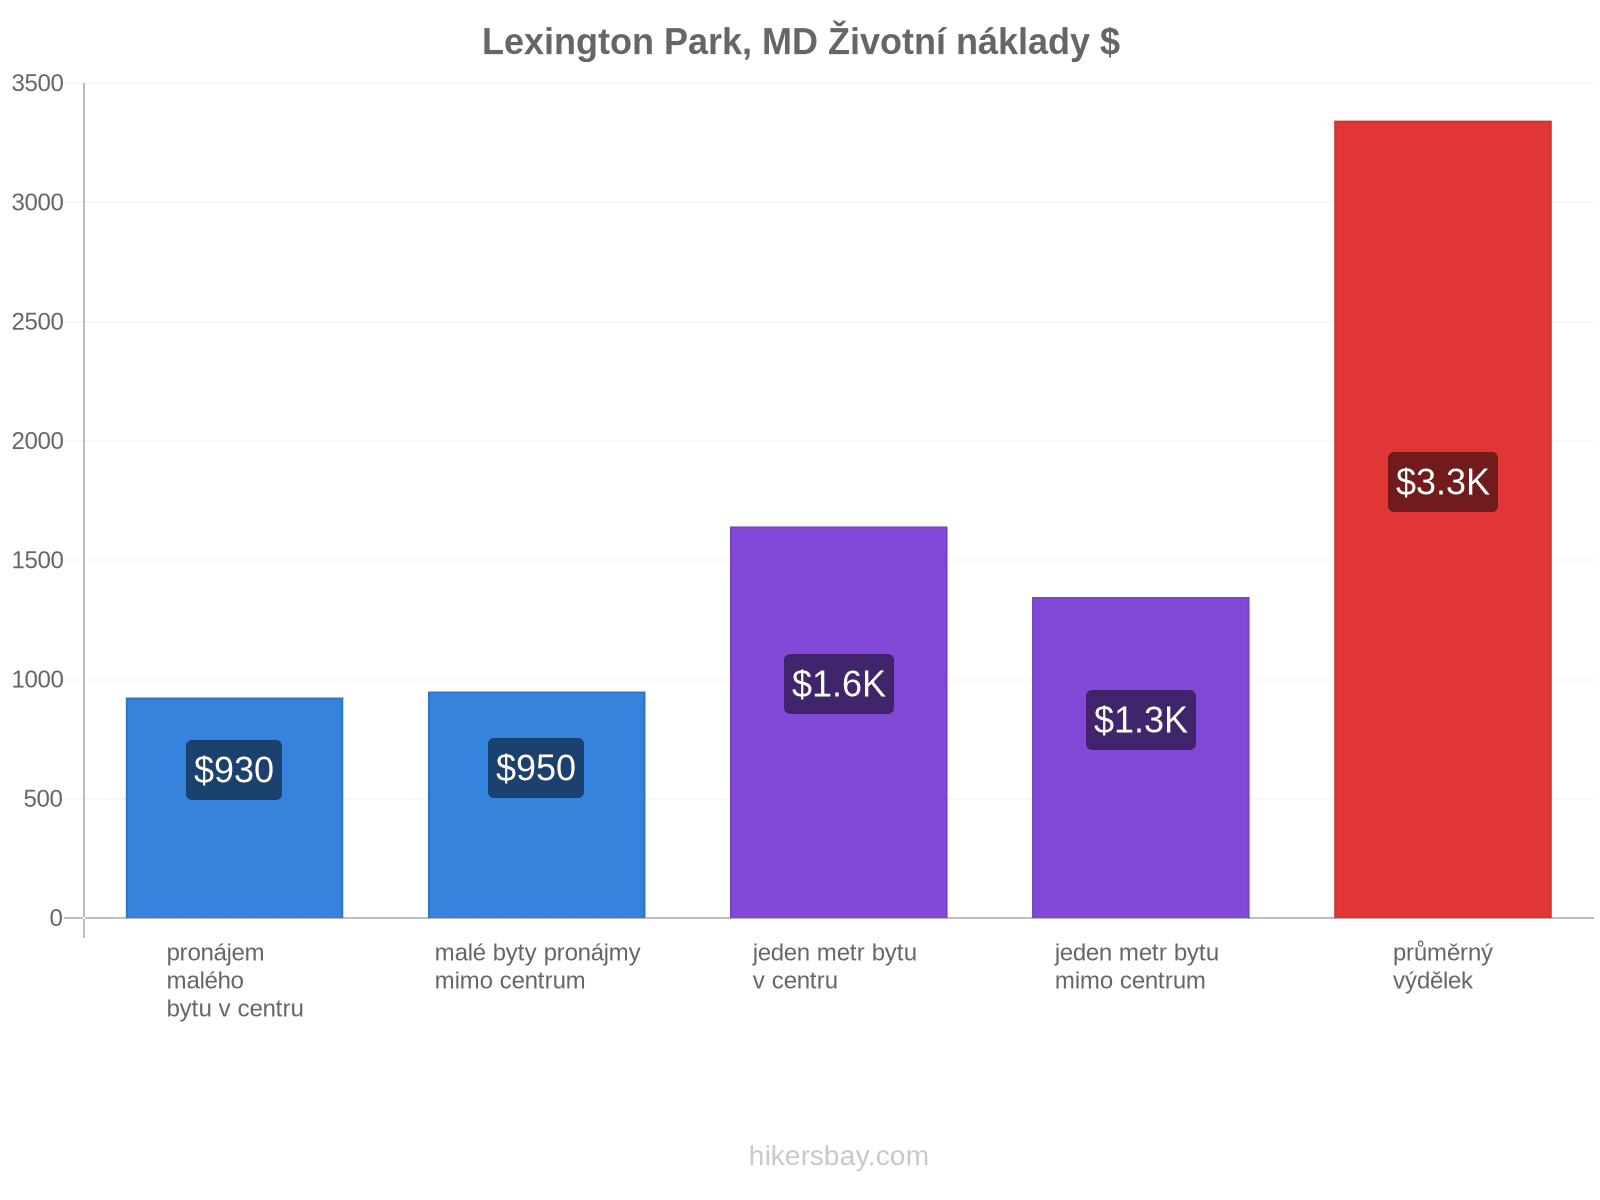 Lexington Park, MD životní náklady hikersbay.com